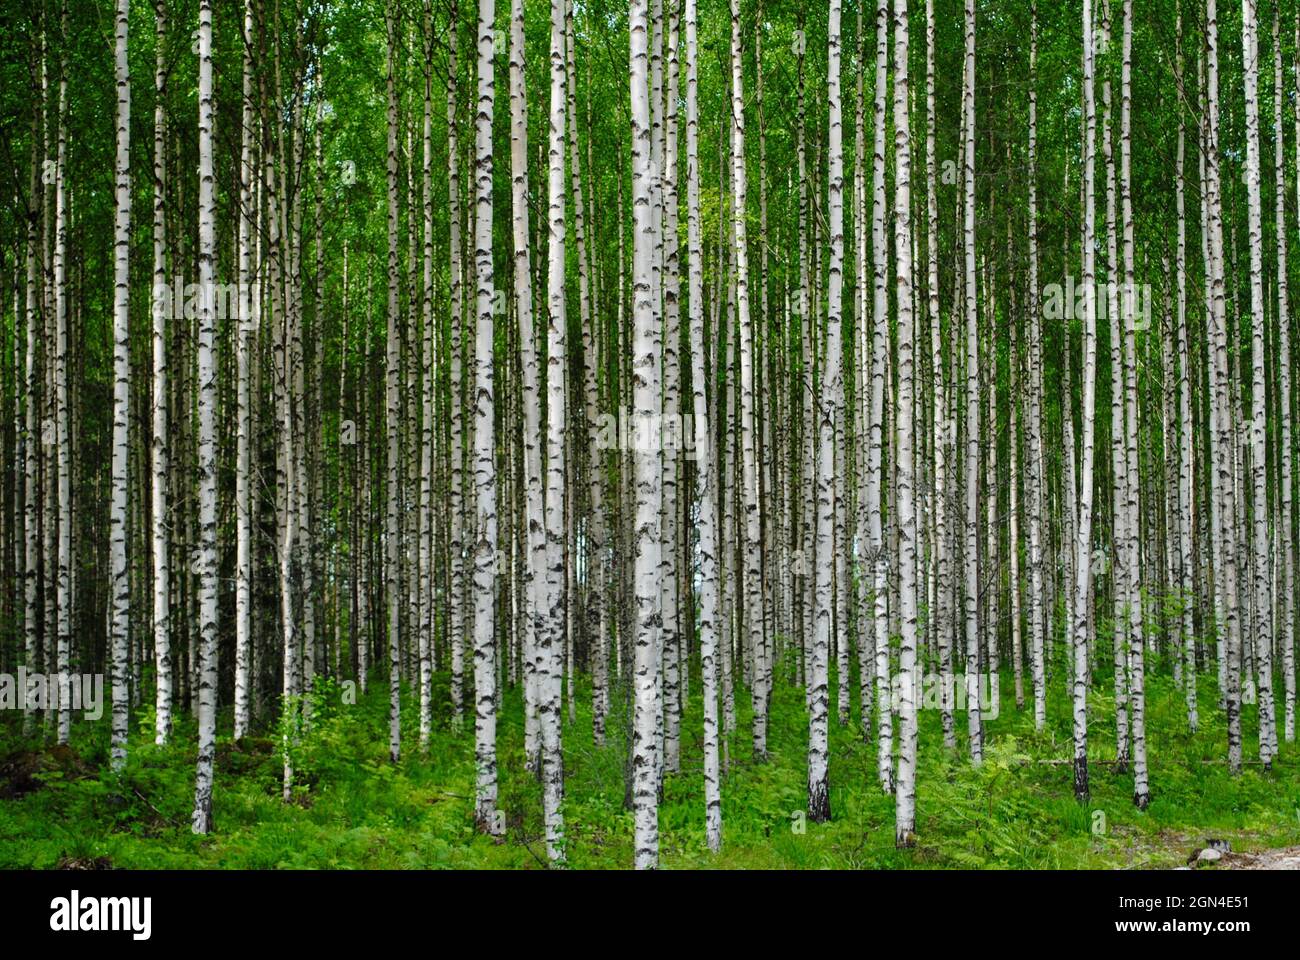 A dense birch forest in Uukuniemi, Eastern Finland Stock Photo